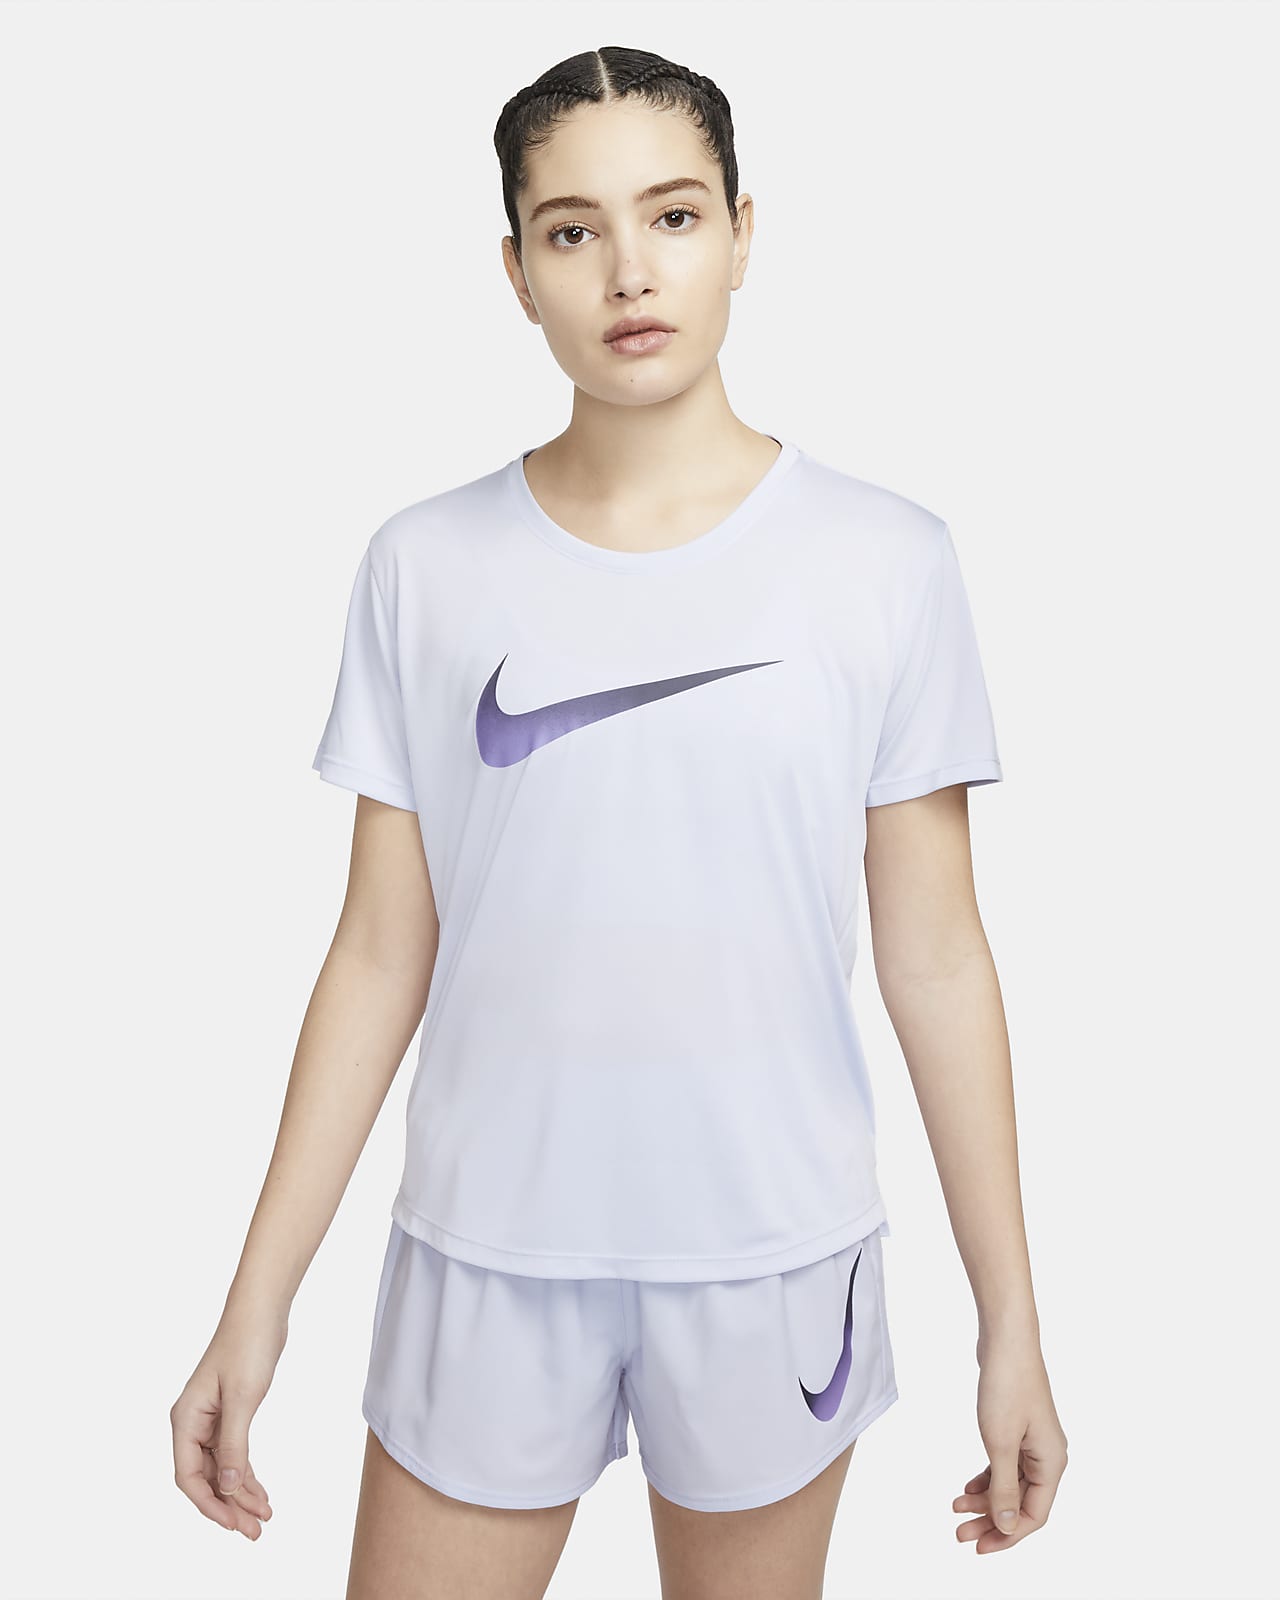 Reciteren Mediaan Zijdelings Nike Dri-FIT One Hardlooptop met korte mouwen voor dames. Nike BE